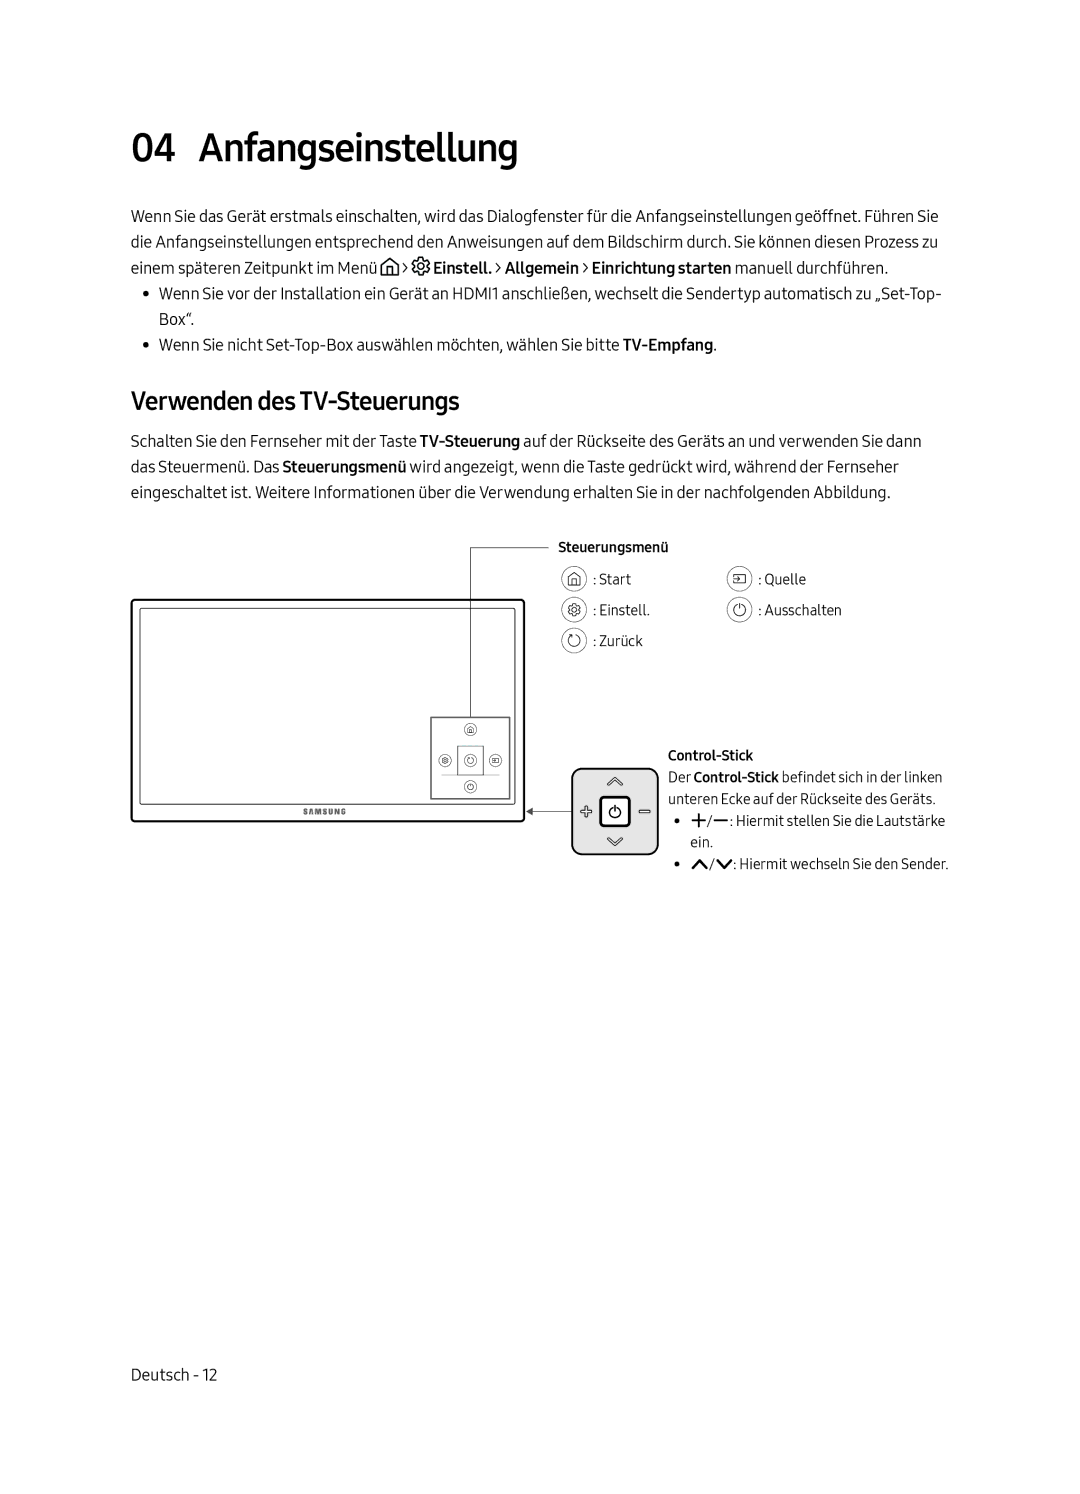 Samsung UE49MU6225KXXC, UE65MU6225KXXC, UE55MU6225KXXC manual Anfangseinstellung, Verwenden des TV-Steuerungs 